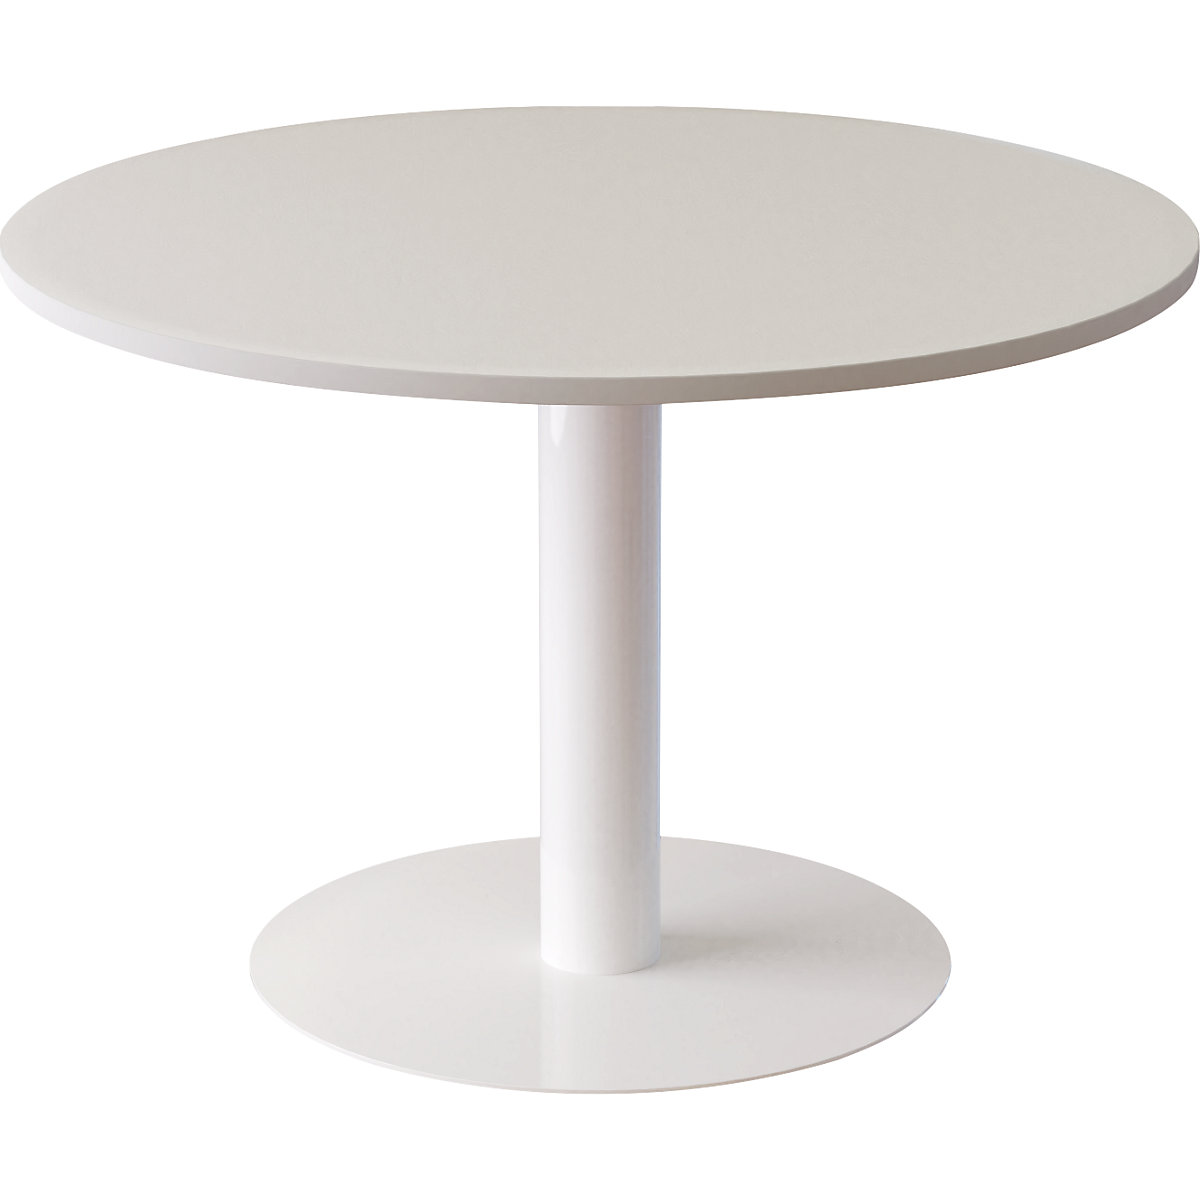 Konferenčna miza, Ø 1150 mm, višina 750 mm, bele barve-4